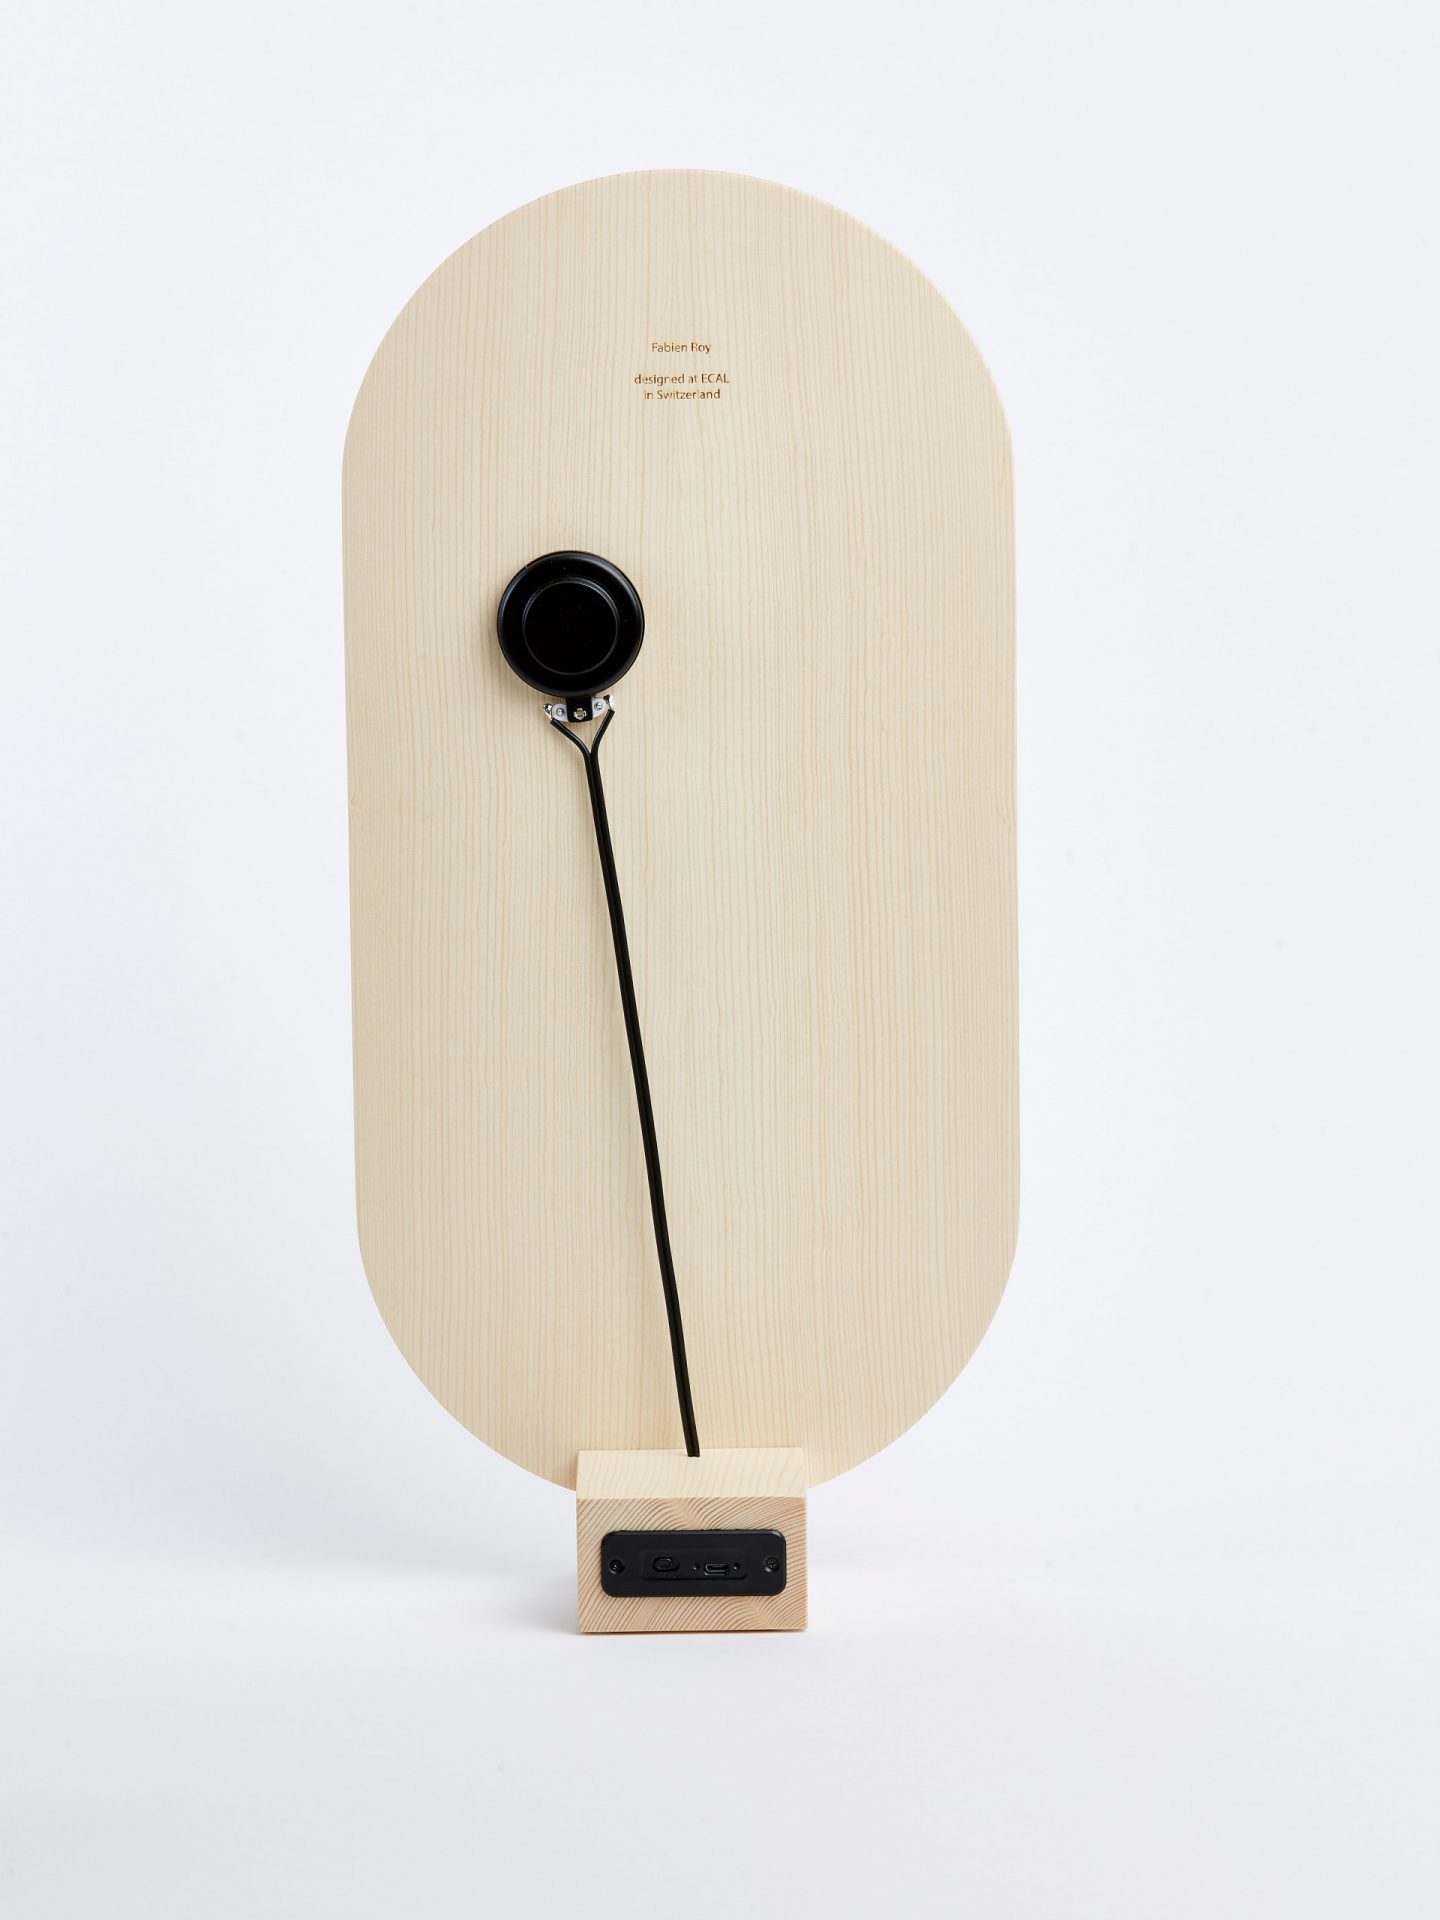 Bucley acoustic board by Fabien Roy